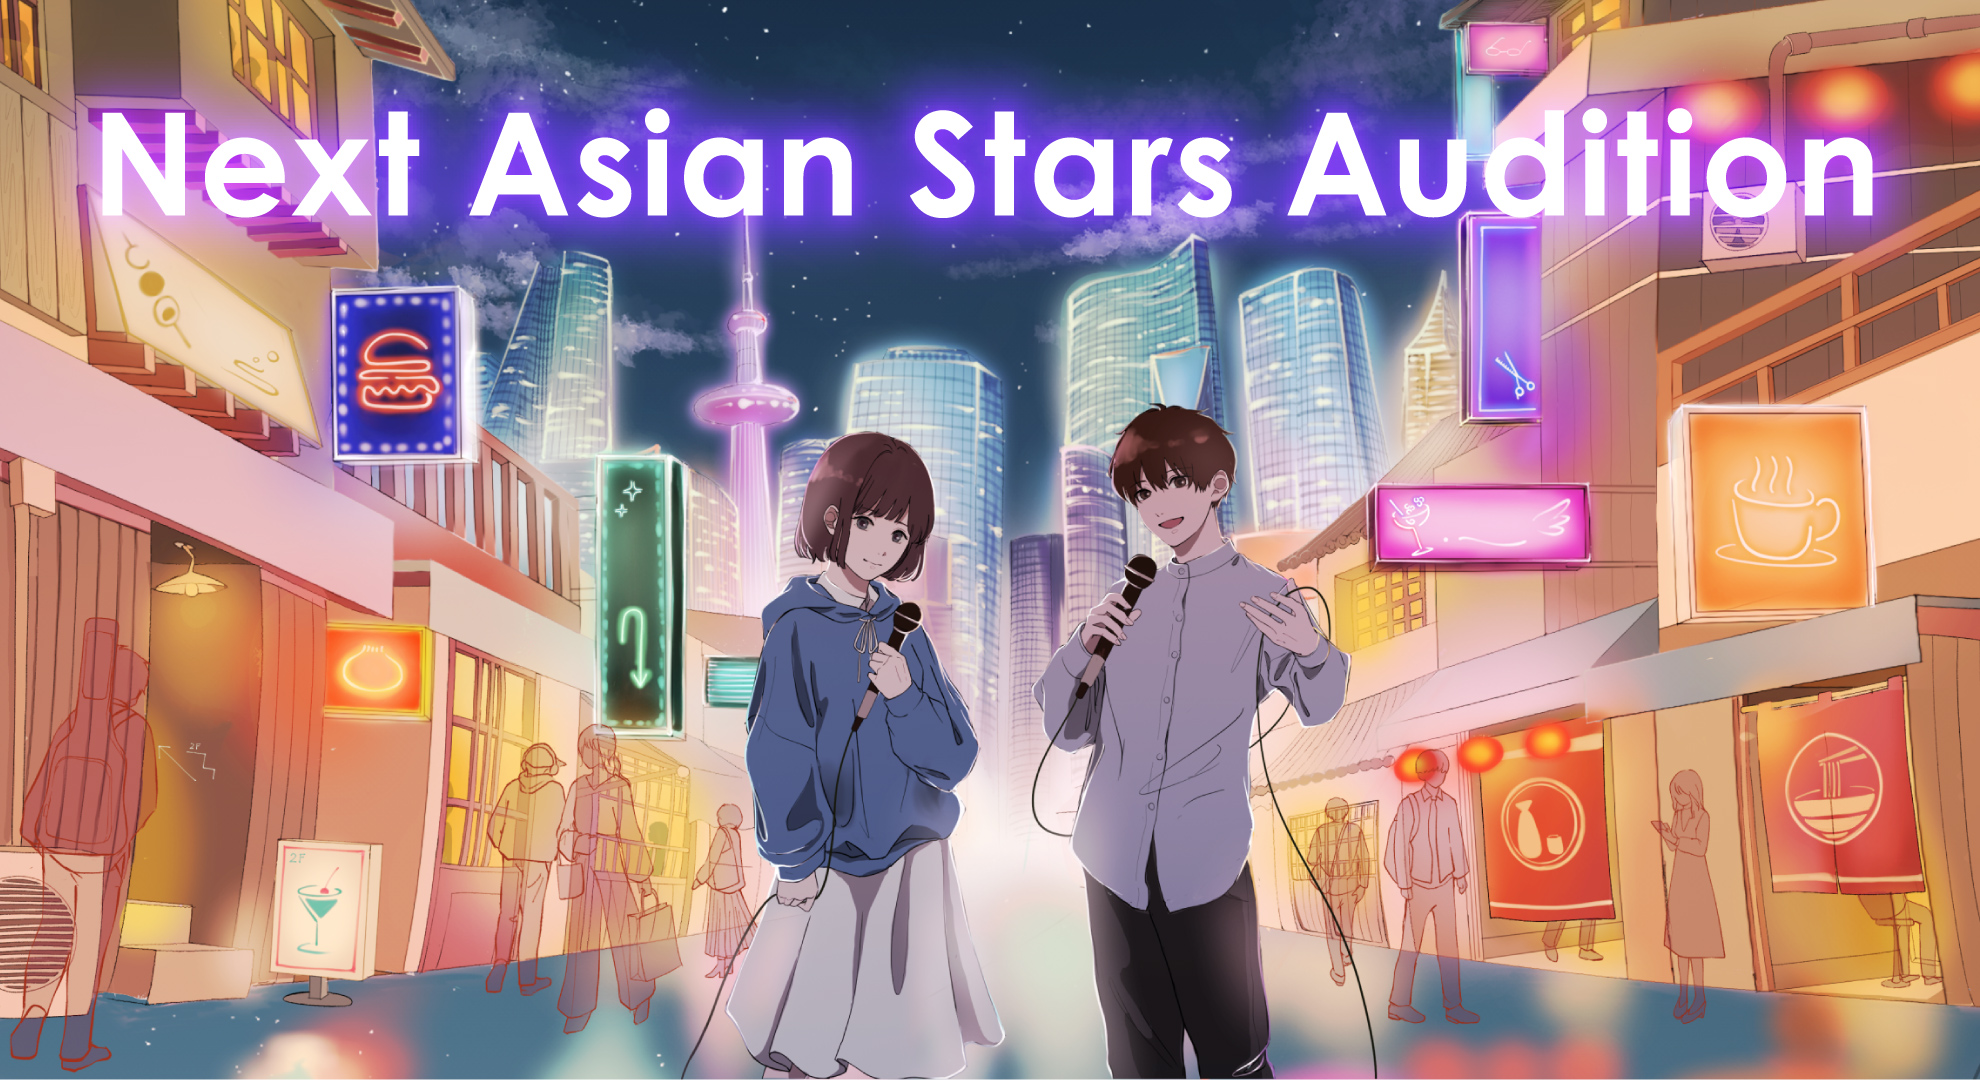 都鳥-totori-がソニーミュージックのアジア進出プロジェクト『Next Asian Stars Audition』のキービジュアルを作成！